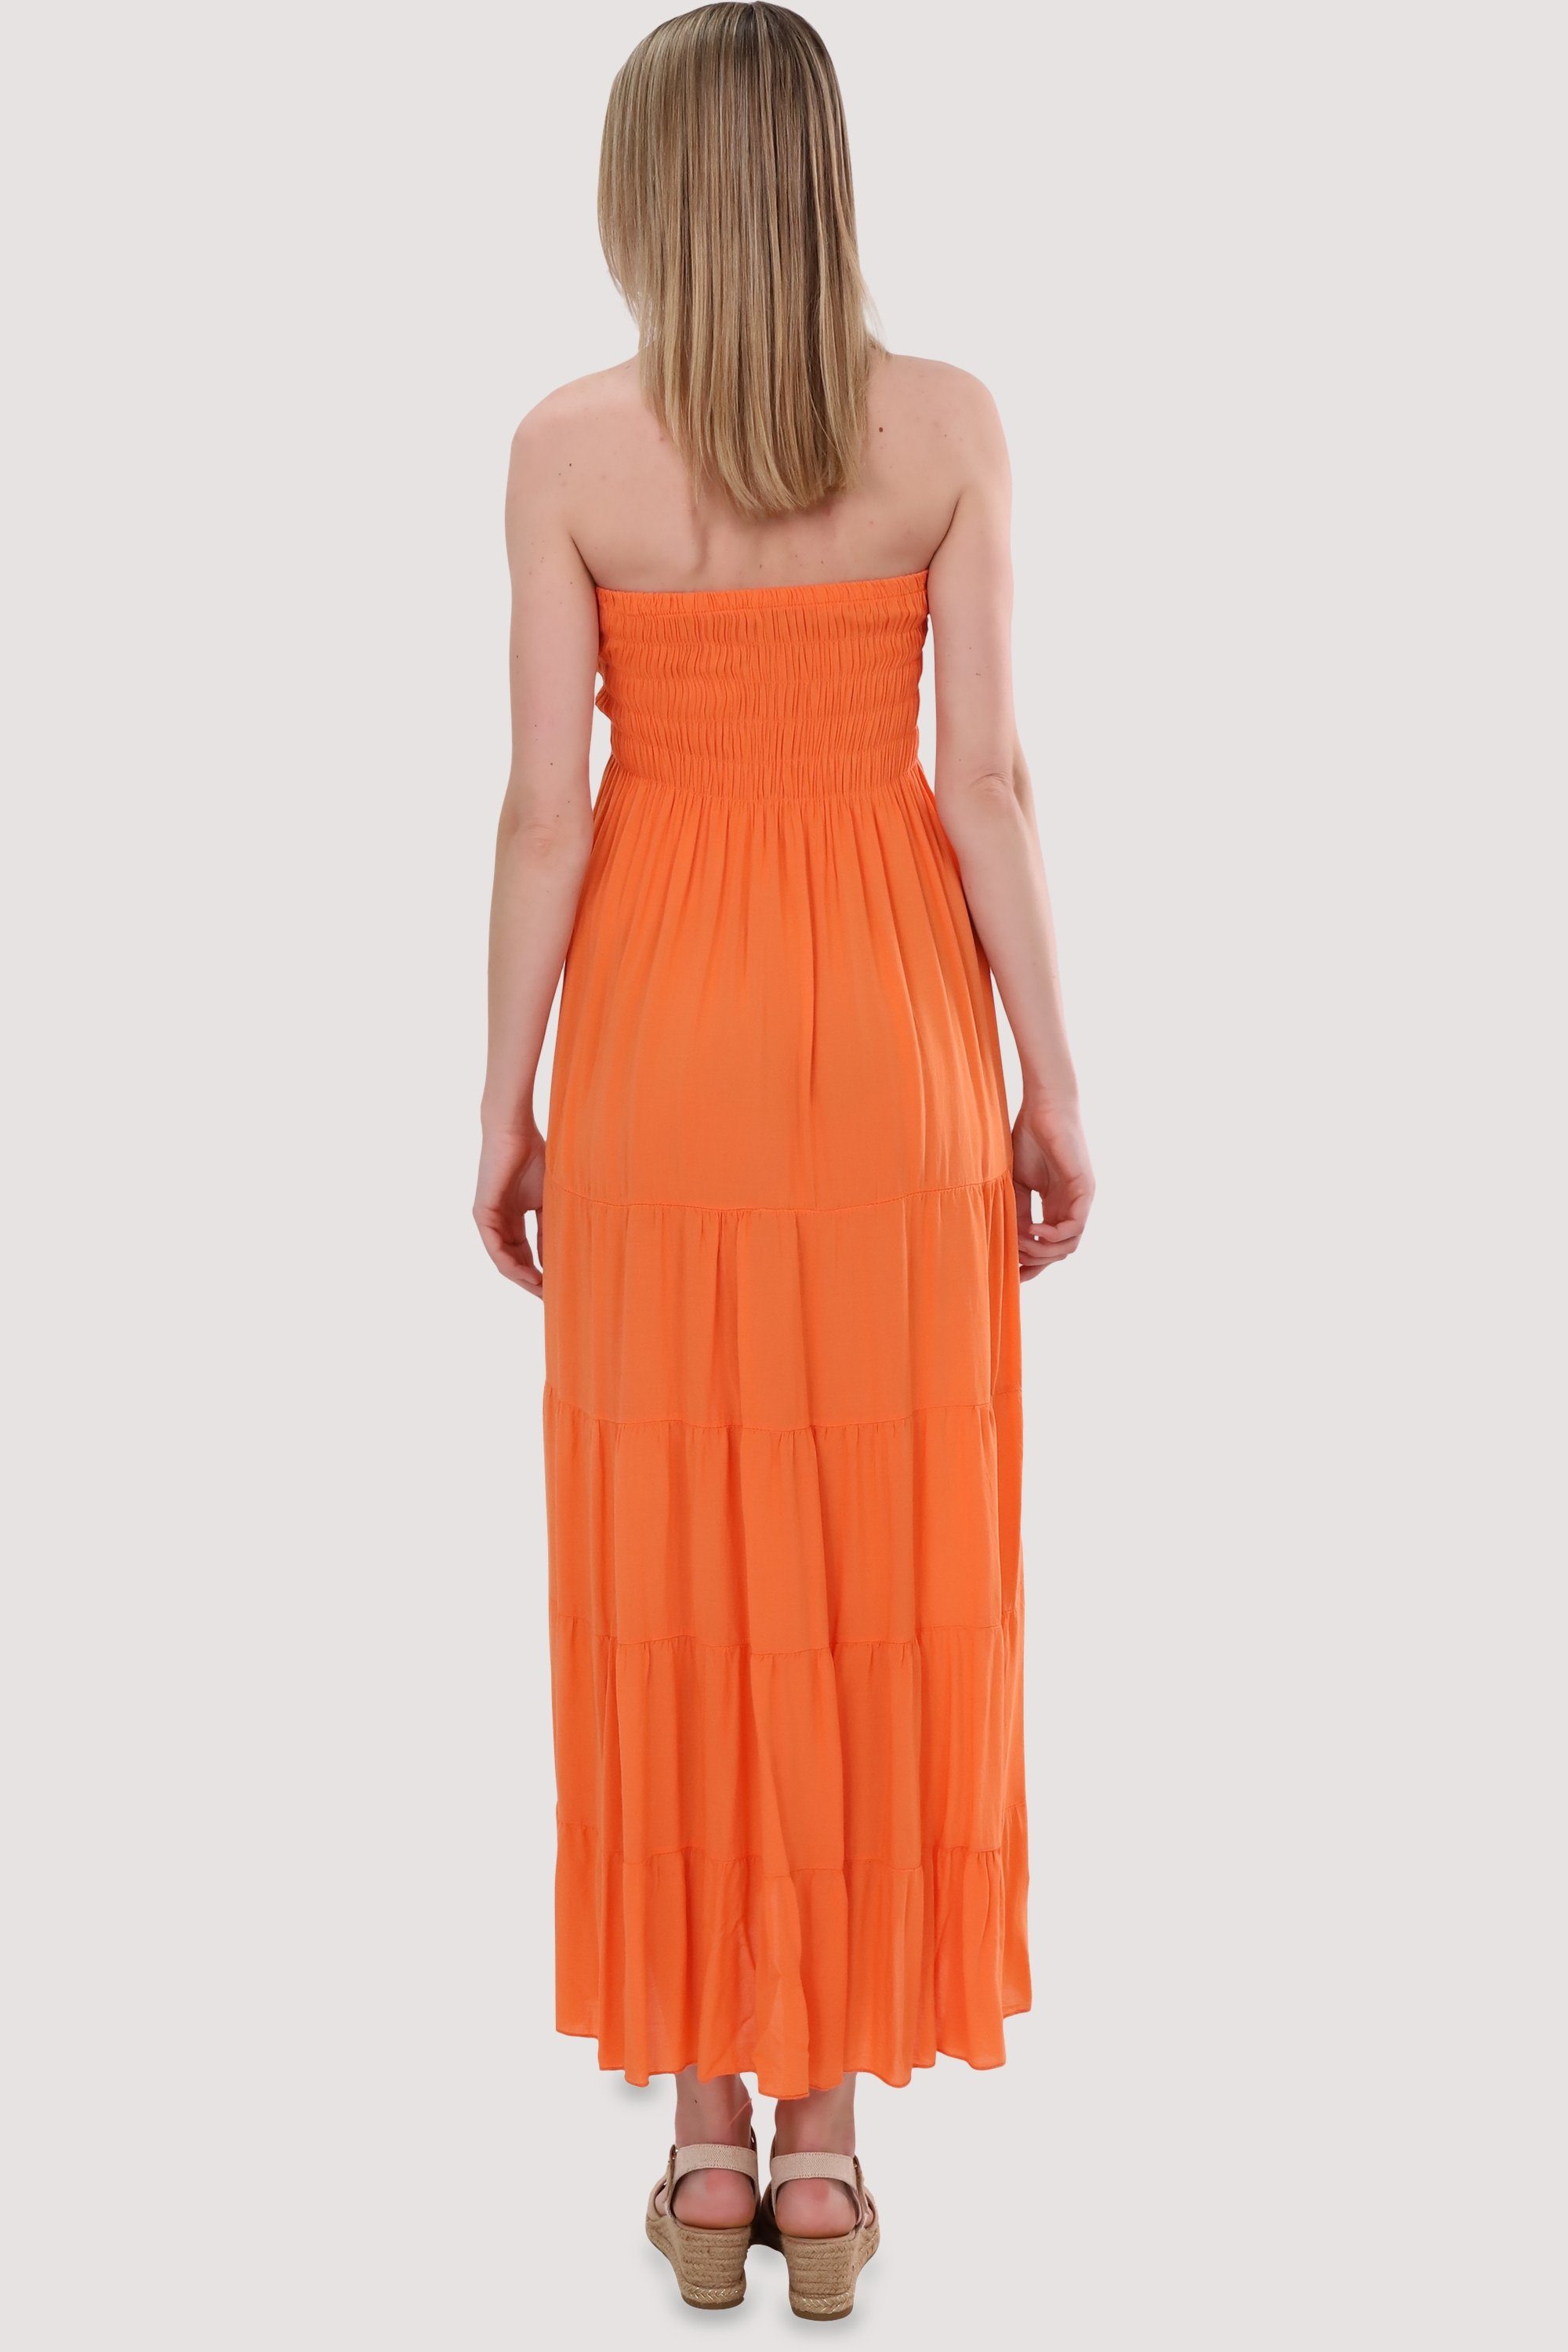 malito orange figurumspielendes Einheitsgröße Bandeaukleid Strandkleid fashion 4635 Sommerkleid more than